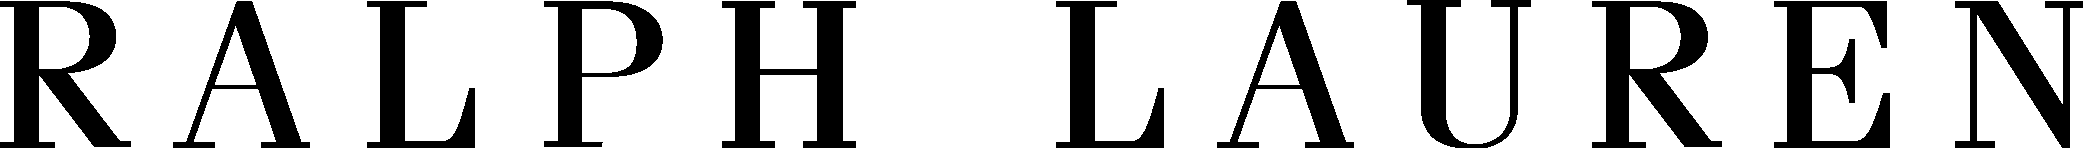 Ralph Lauren Corporation Logo Vector